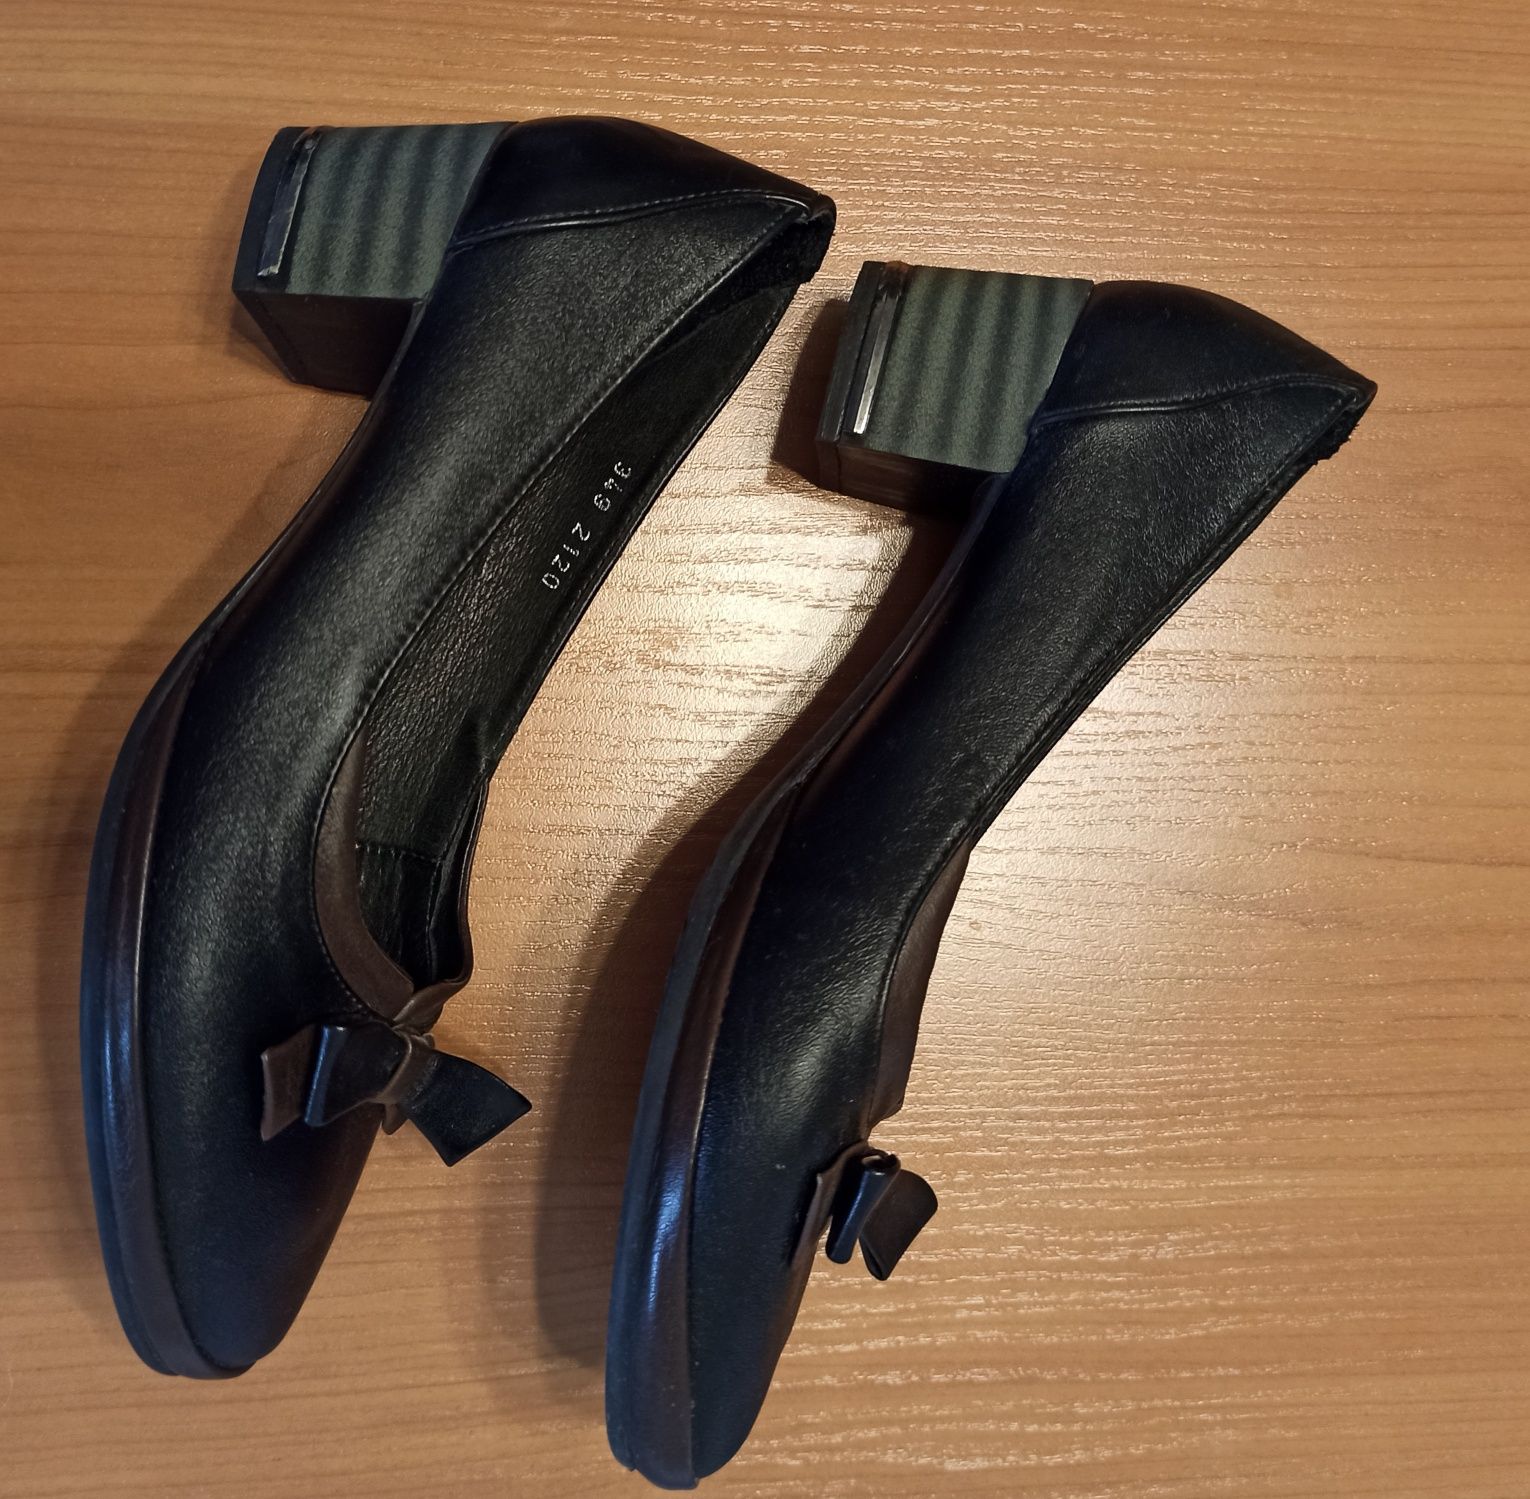 Продам туфли Ripka женские кожаные на устойчивом каблуке